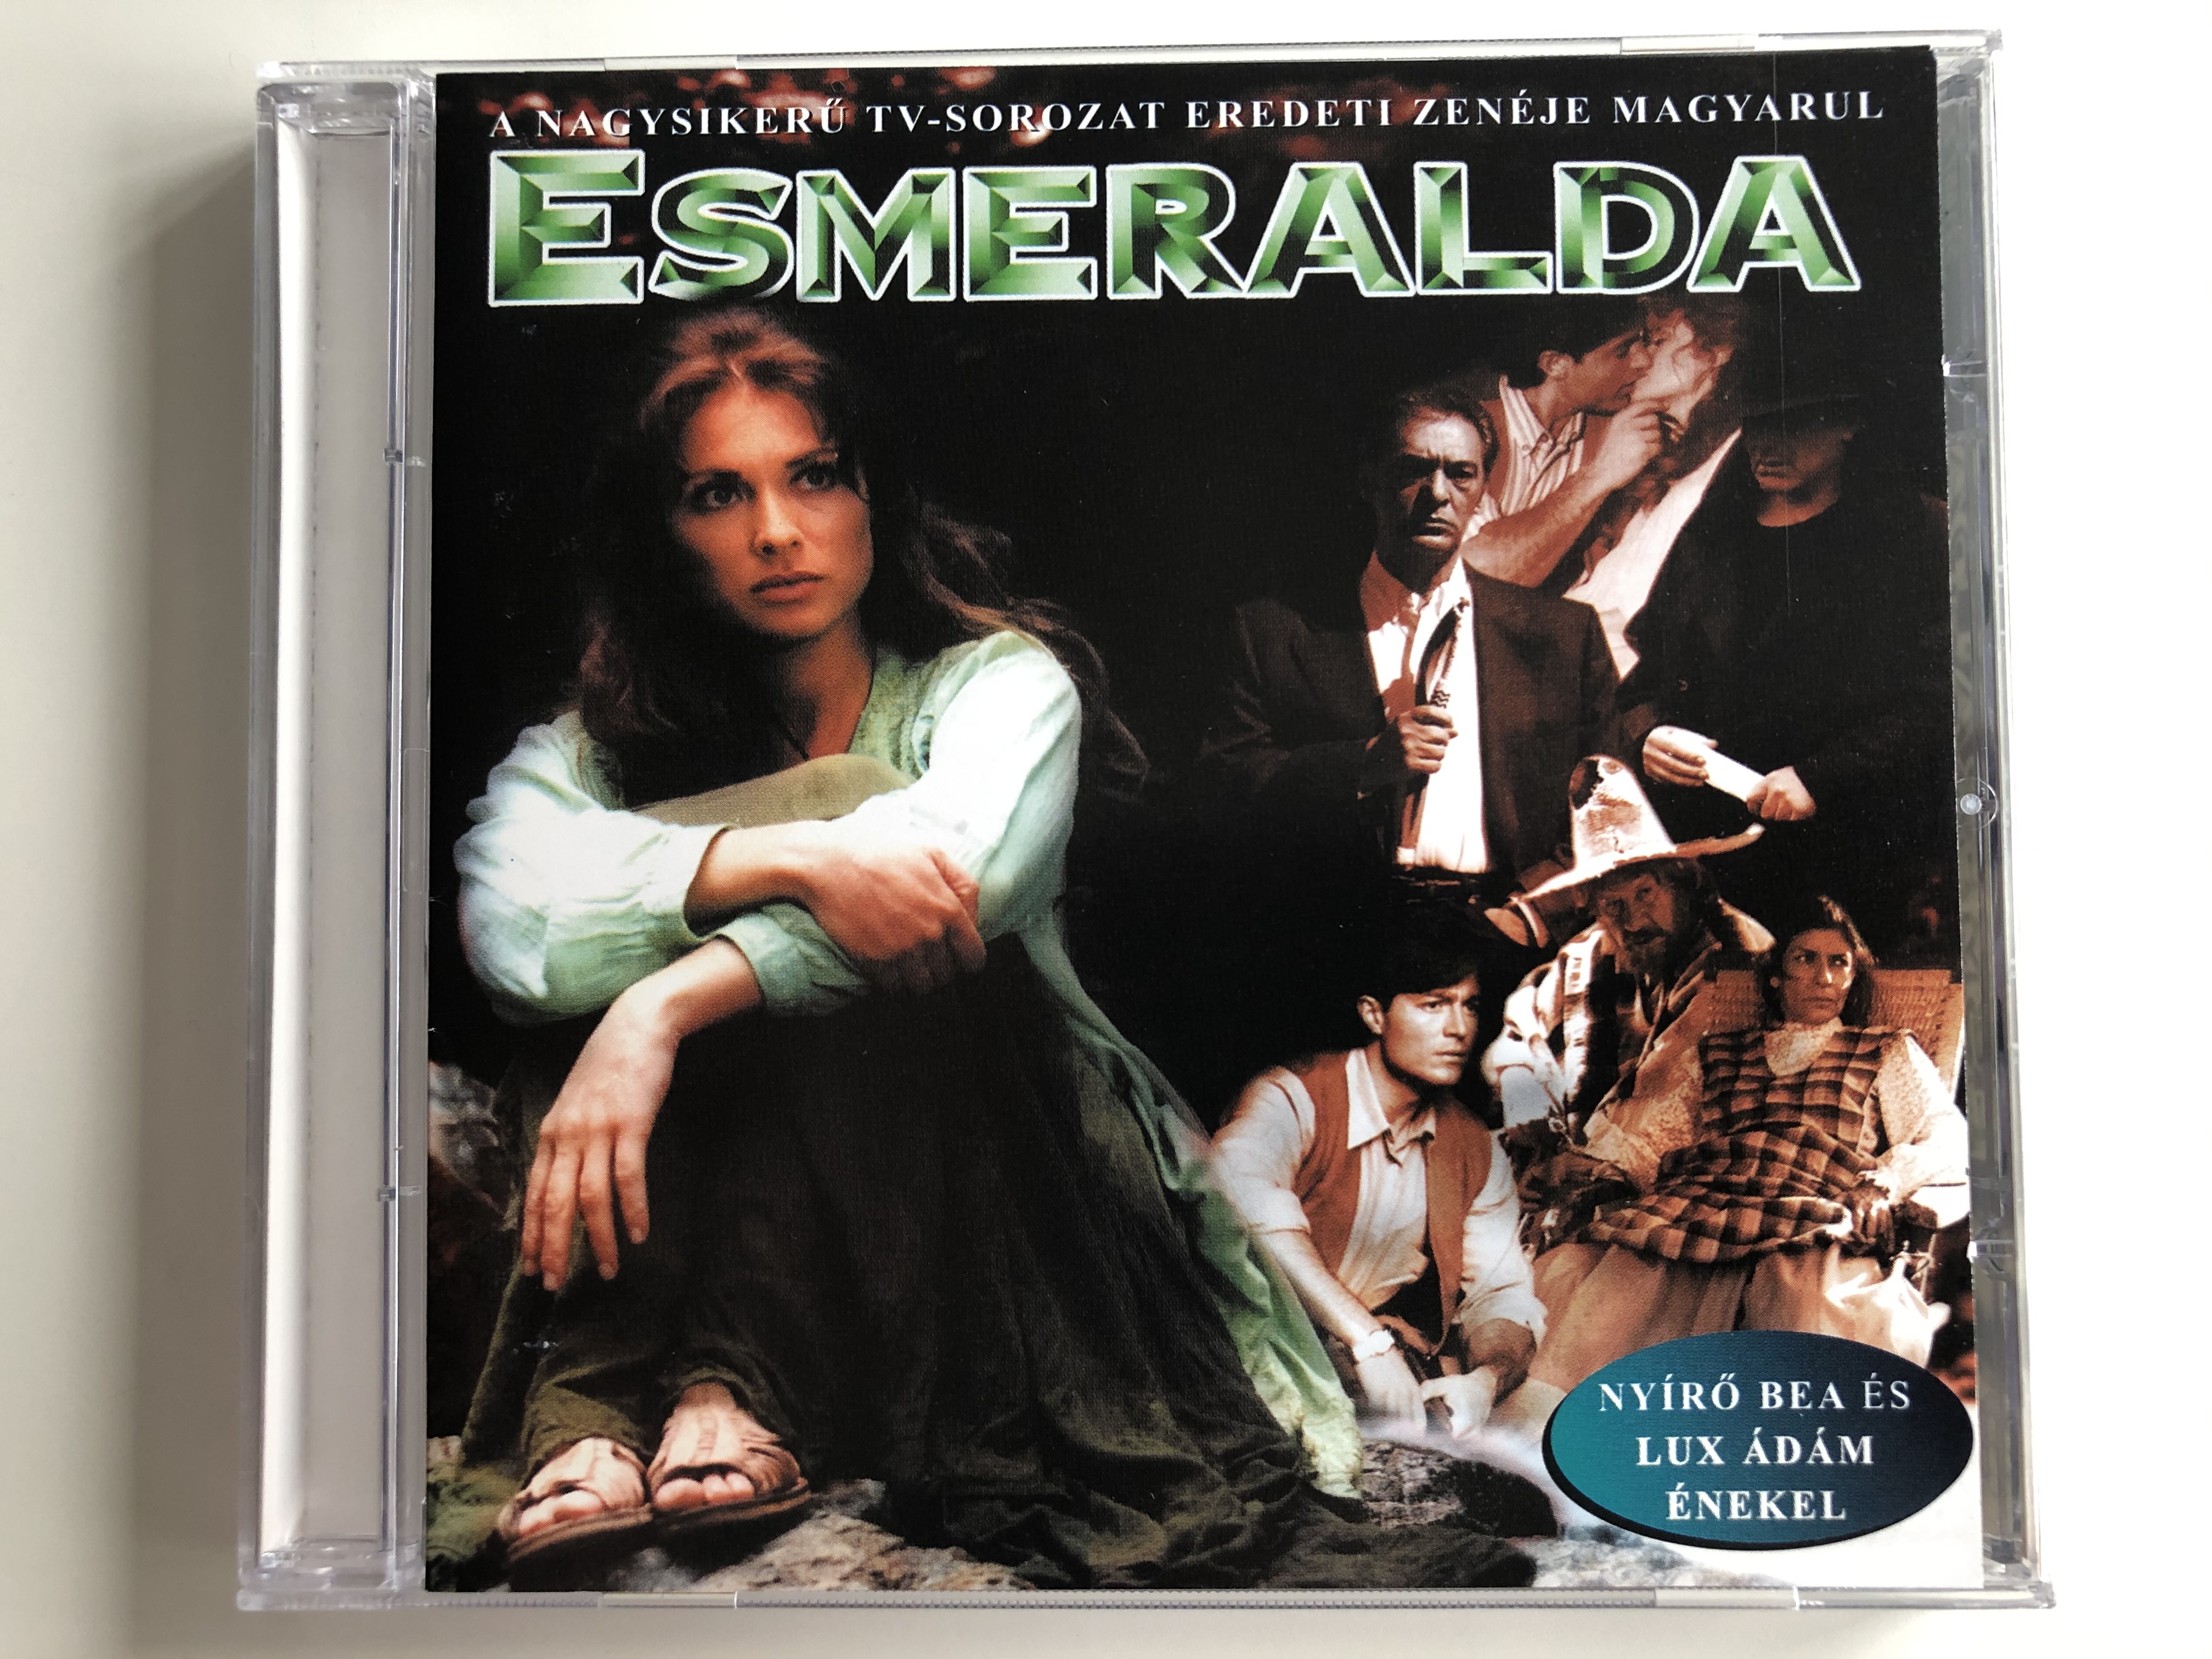 esmeralda-a-nagysikeru-tv-sorozat-eredeti-zeneje-magyarul-esmeralda-emi-quint-audio-cd-1999-521687-2-1-.jpg